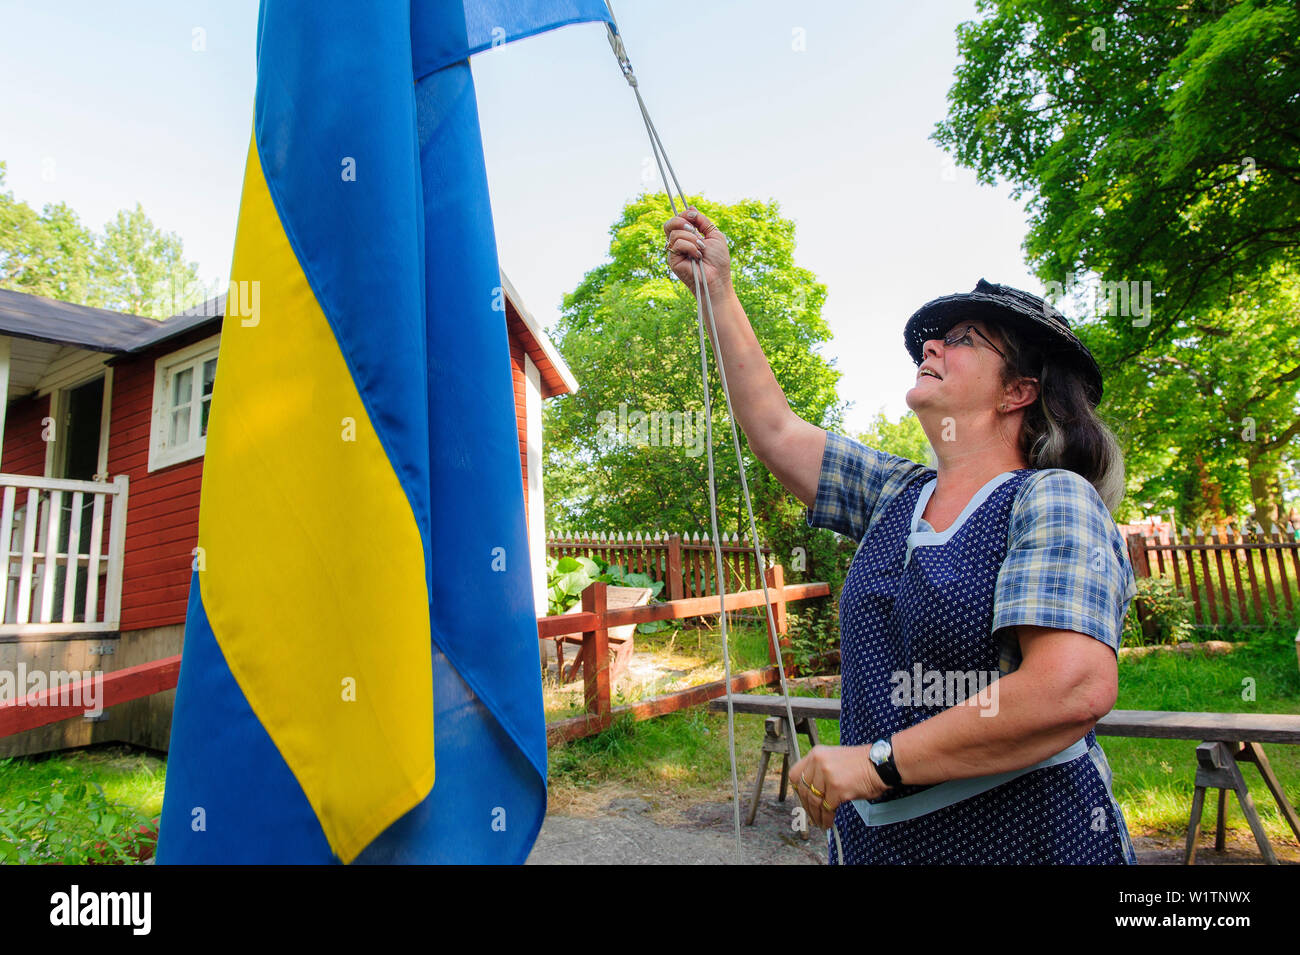 Riparto svedese nel giardino del museo all'aperto Skansen, la bandiera svedese è superato, Stoccolma, Svezia Foto Stock